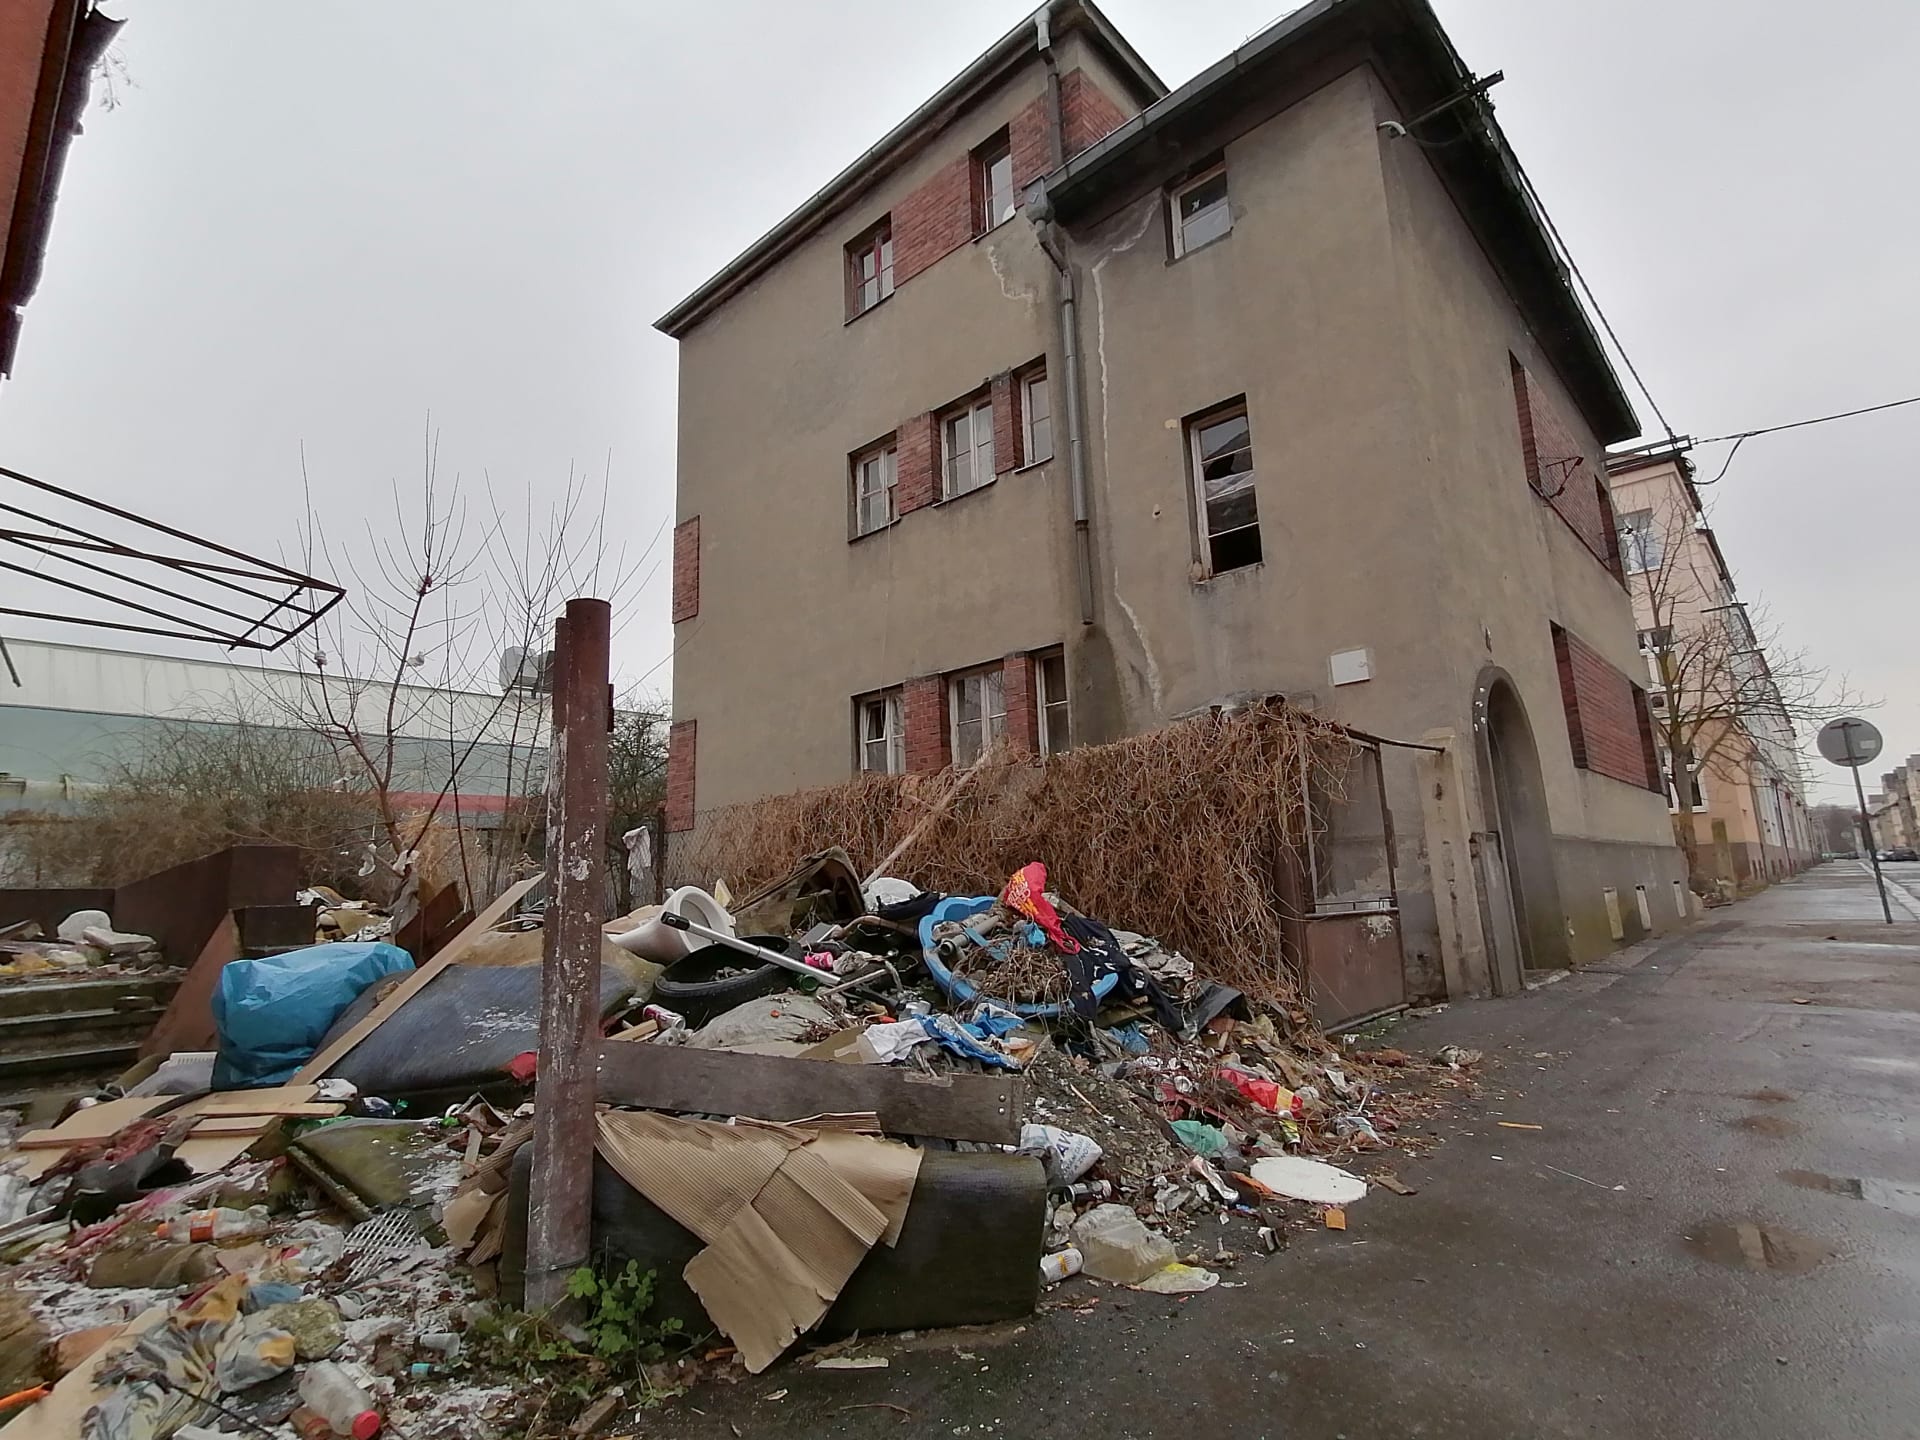 Přístup k domu č. 53 v Božkově ulici v Ostravě, v němž  poslanec Volný ubytovává romské rodiny.